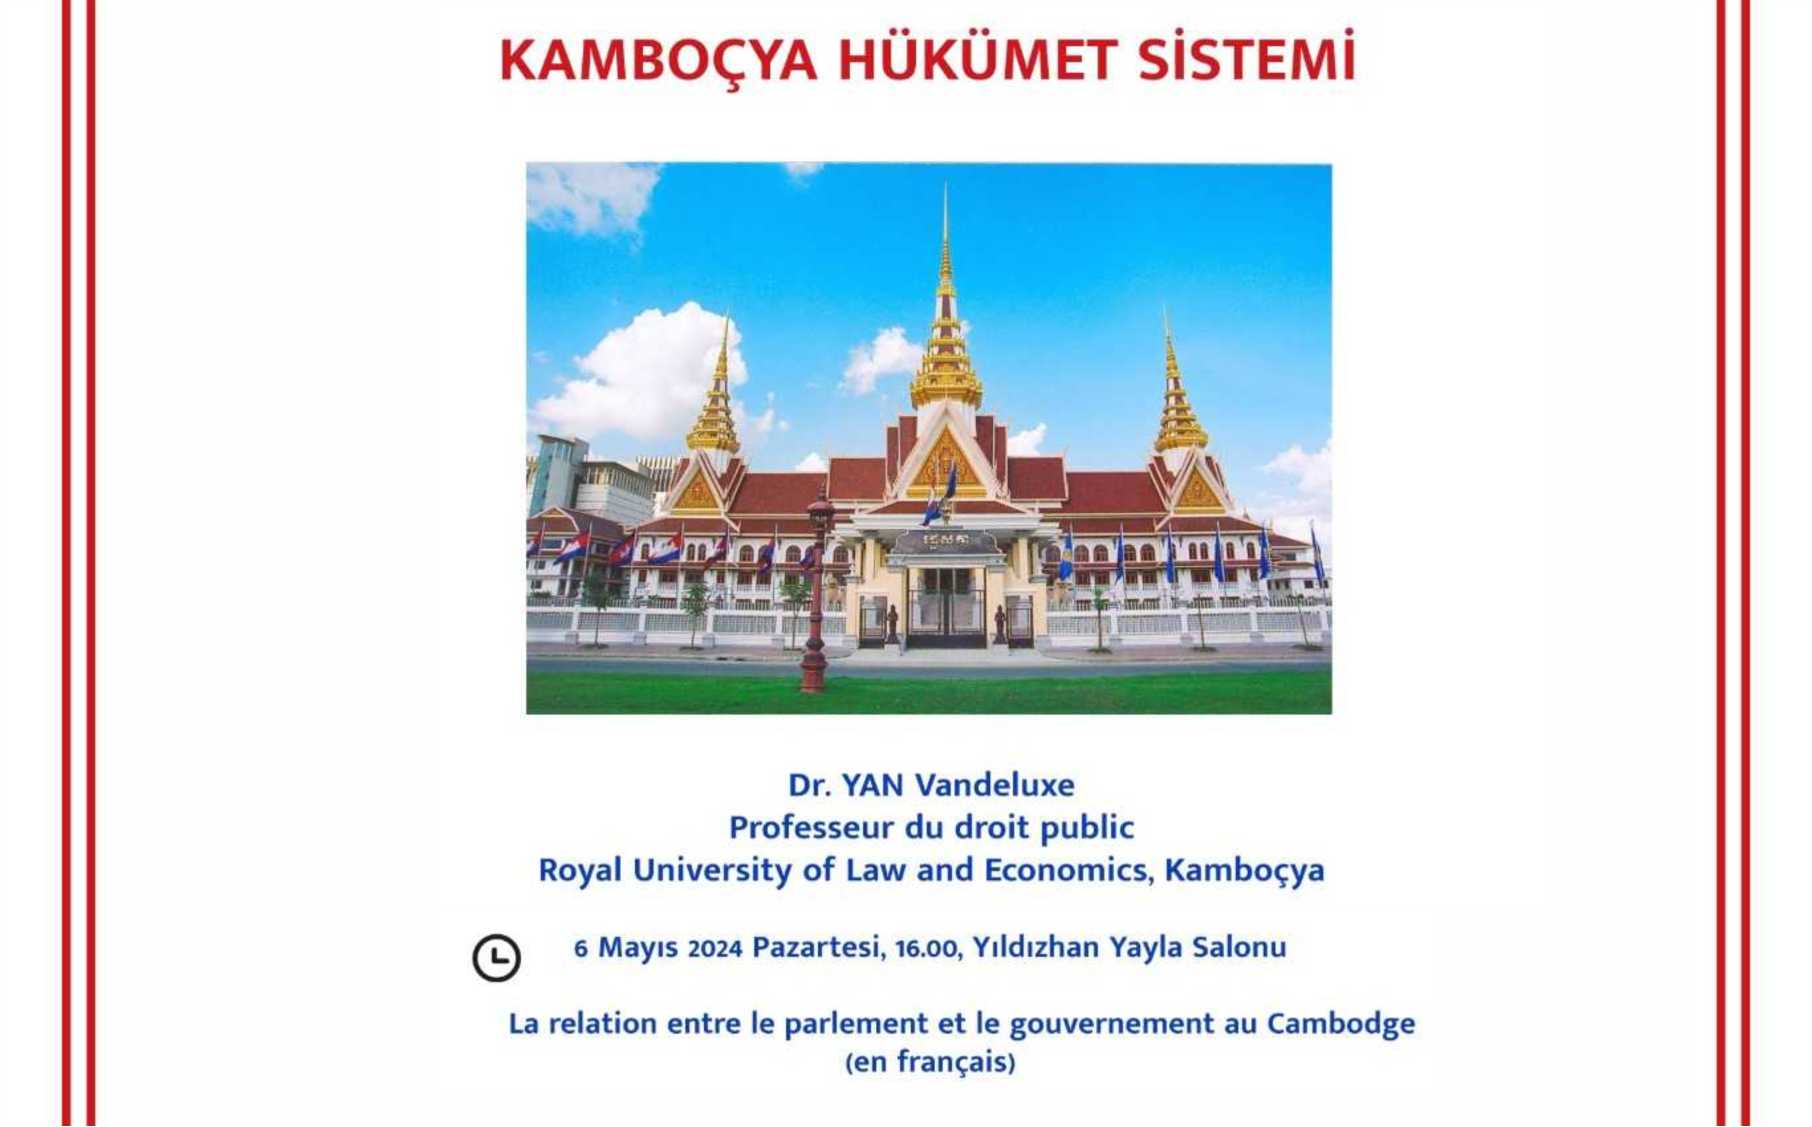 Kamboçya Hükümet Sistemi etkinlik görseli